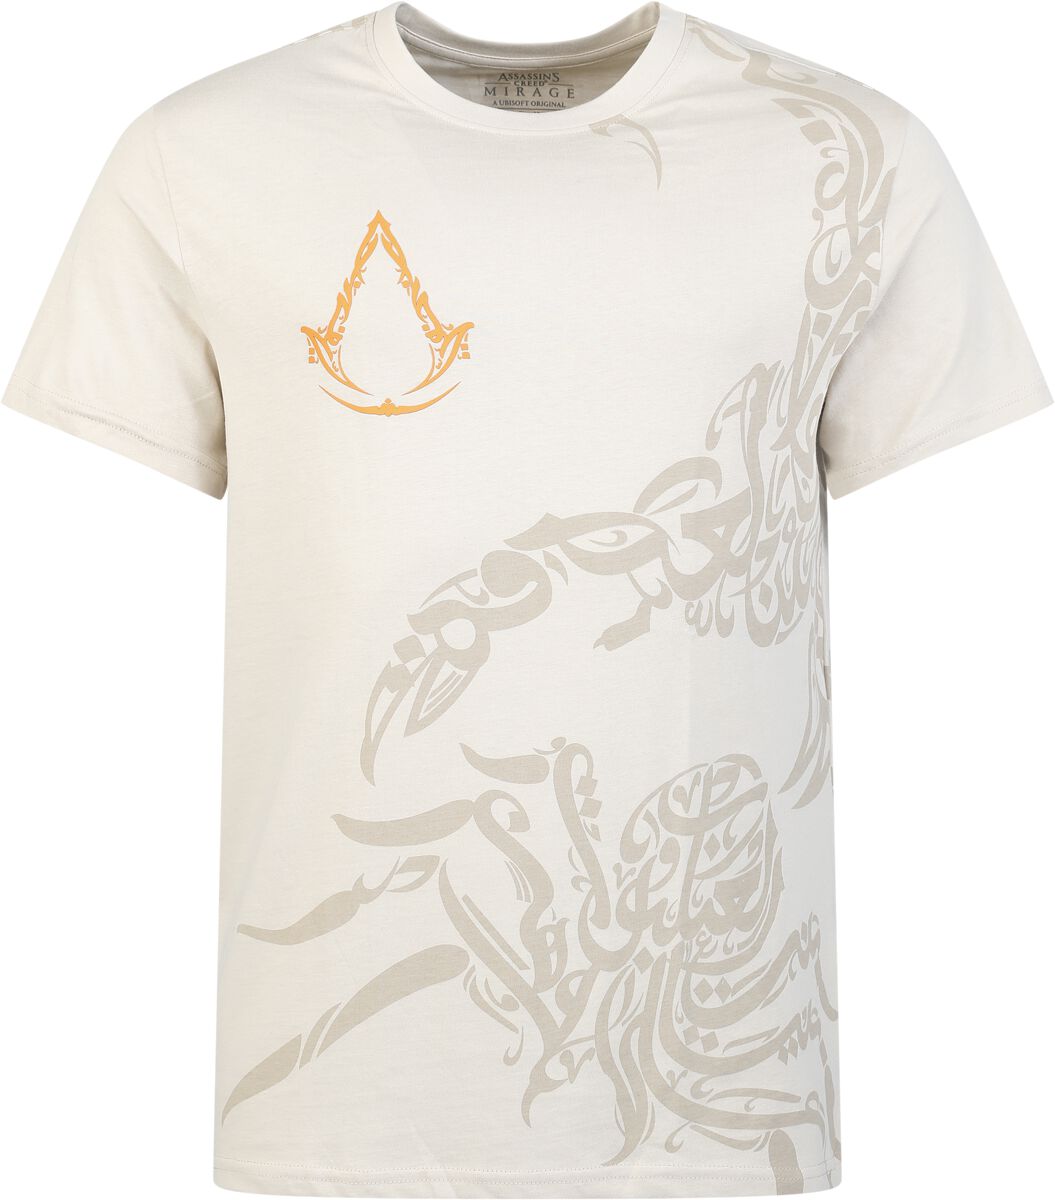 Assassin`s Creed - Gaming T-Shirt - Mirage - Animals - S bis XXL - für Männer - Größe XXL - beige